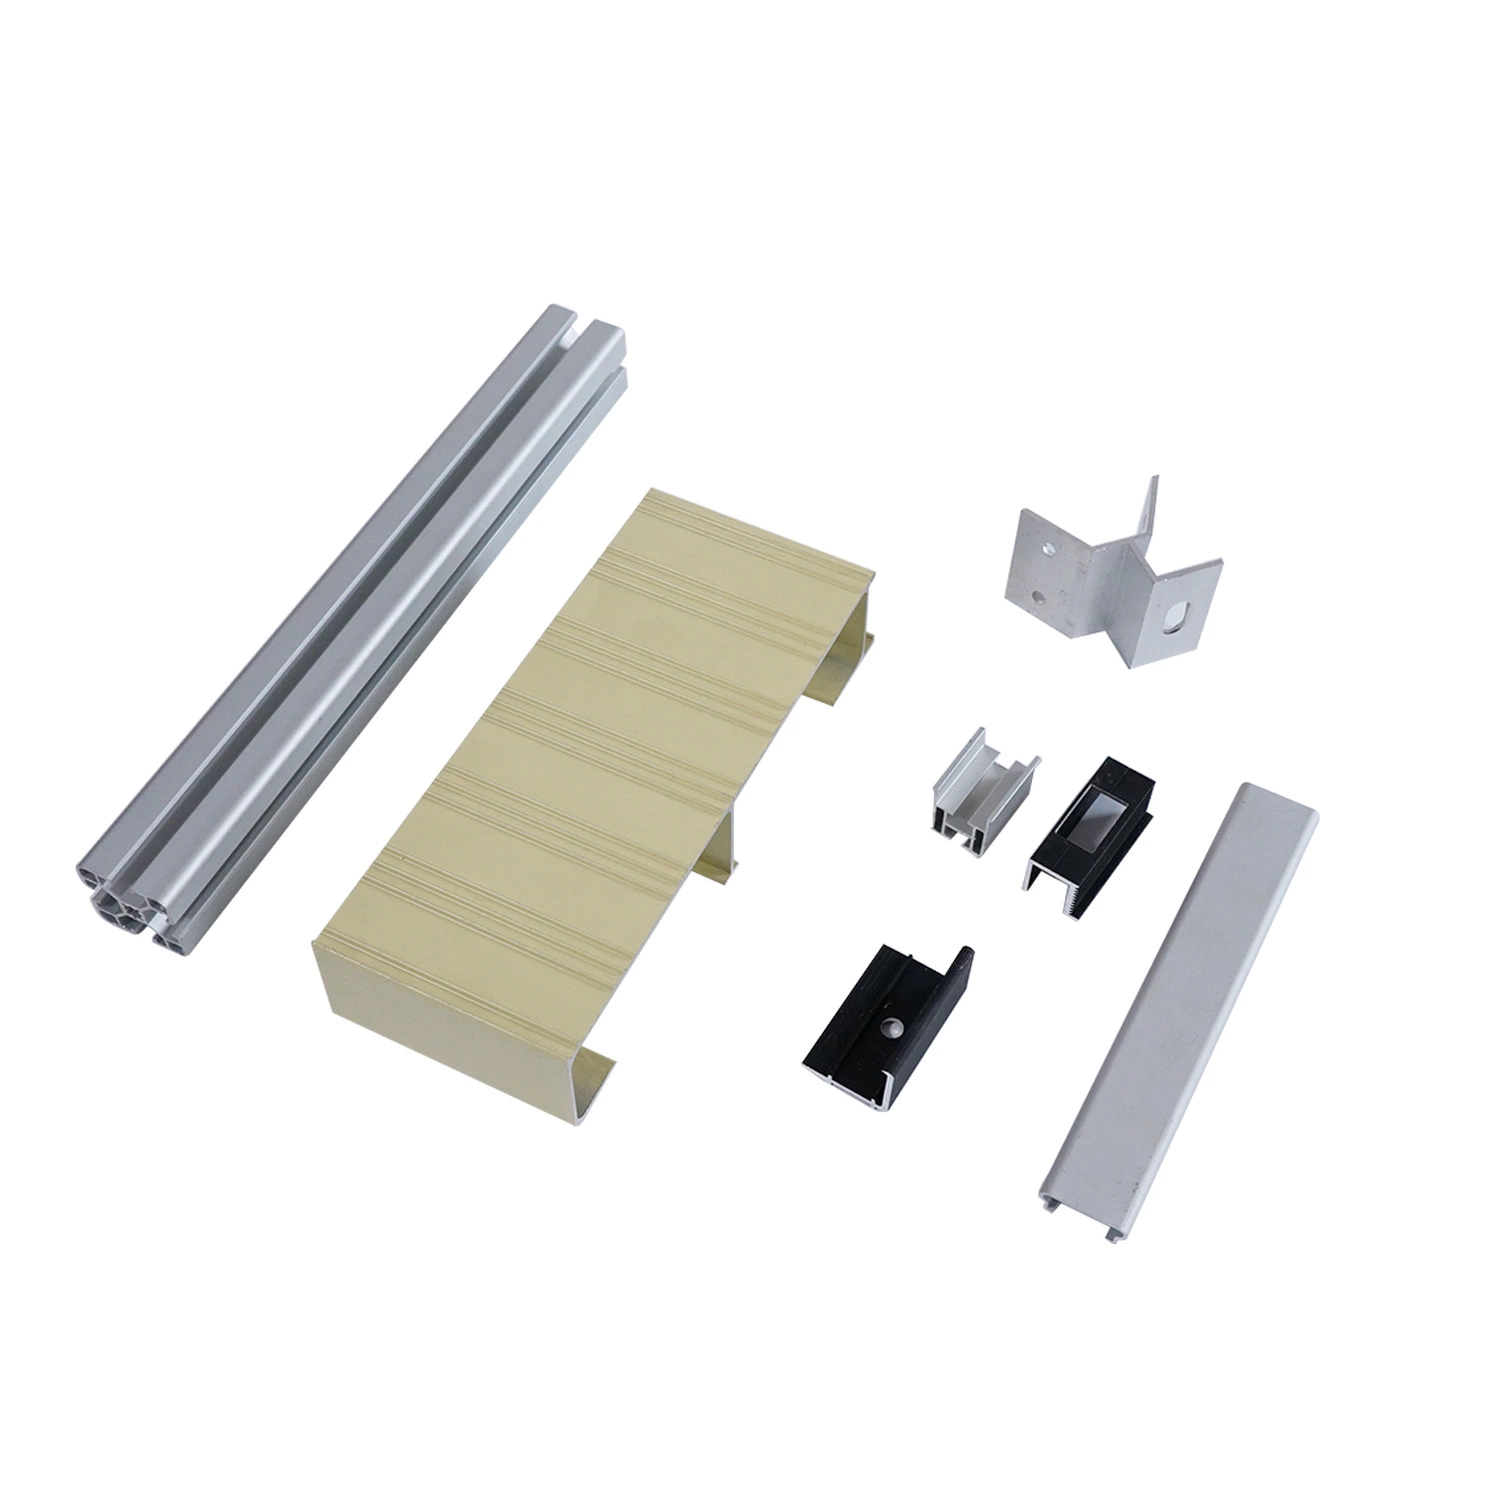 Industrial Aluminium Extrusion Insulation Doors and Windows Profiles Aluminium Profile with Powder Coating